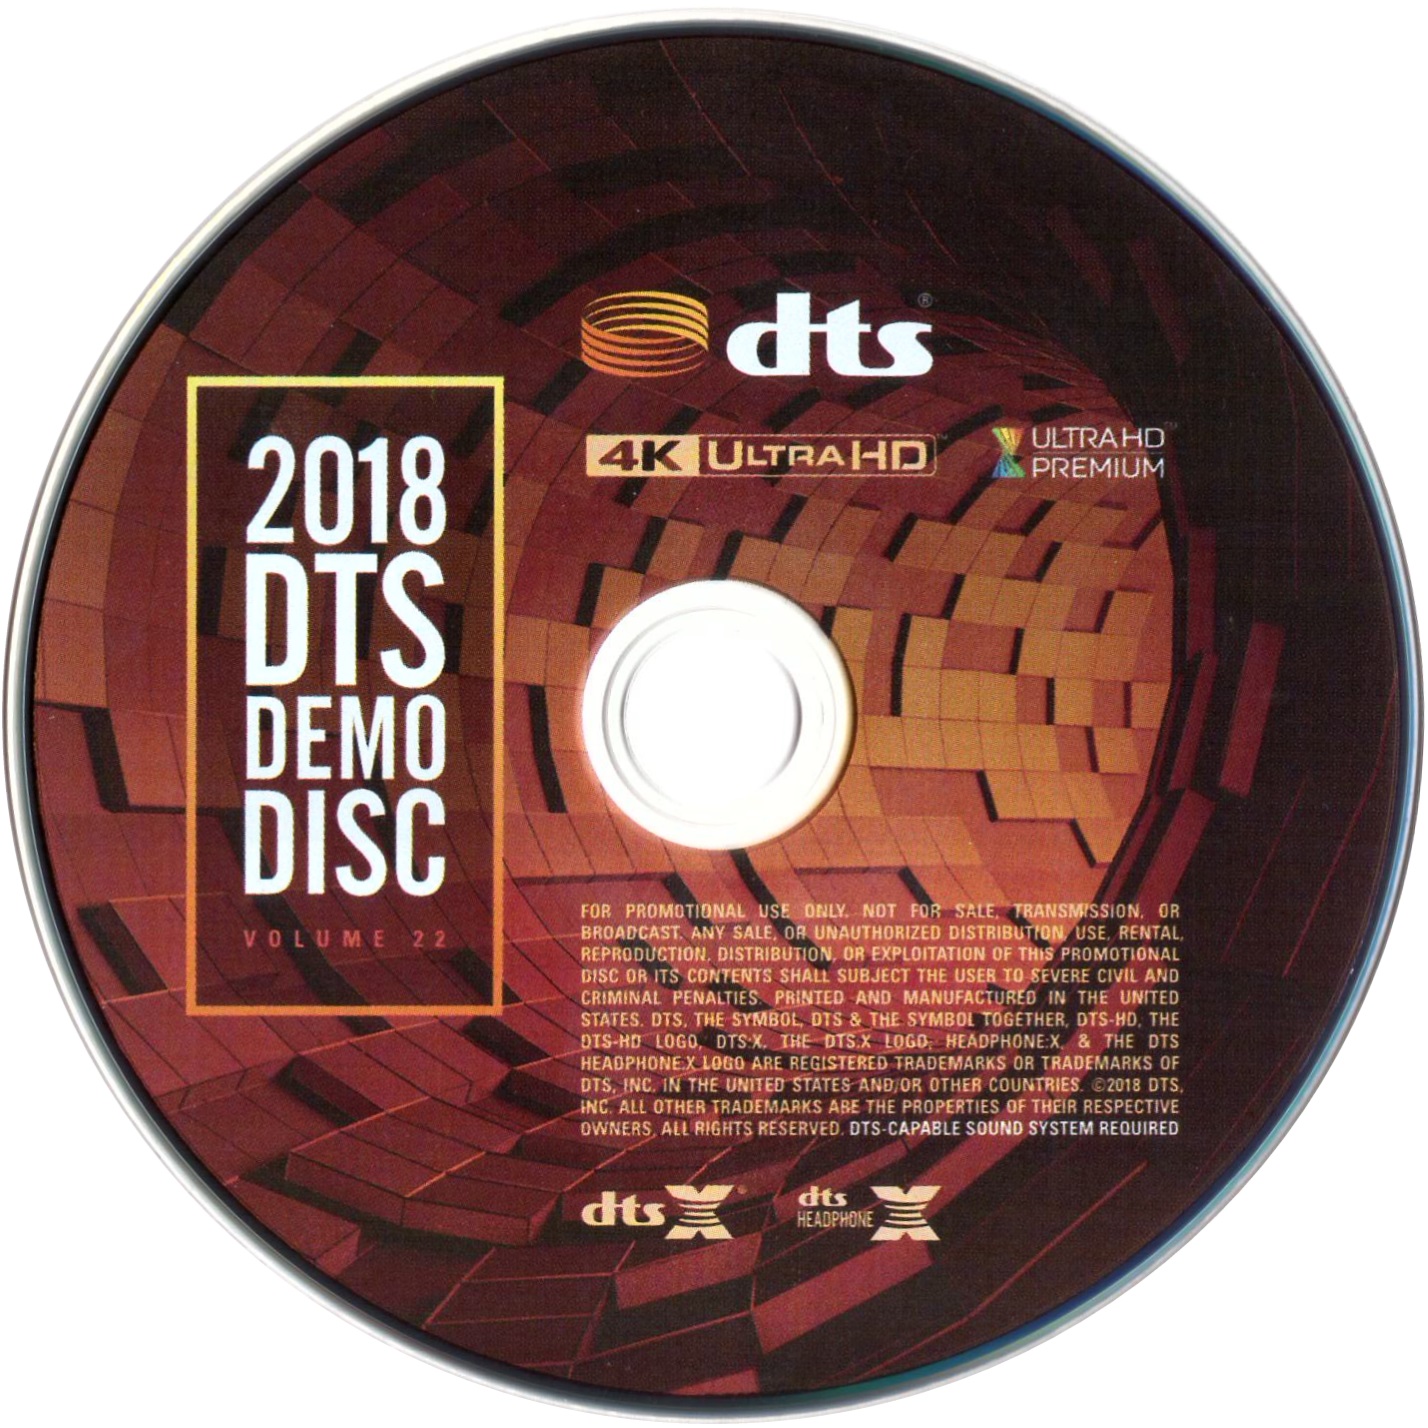 DTS蓝光演示碟 2018 4K UHD DTS Demo Disc Vol.22 H.265 HDR 4KUltraHD DTS-X 7.1-